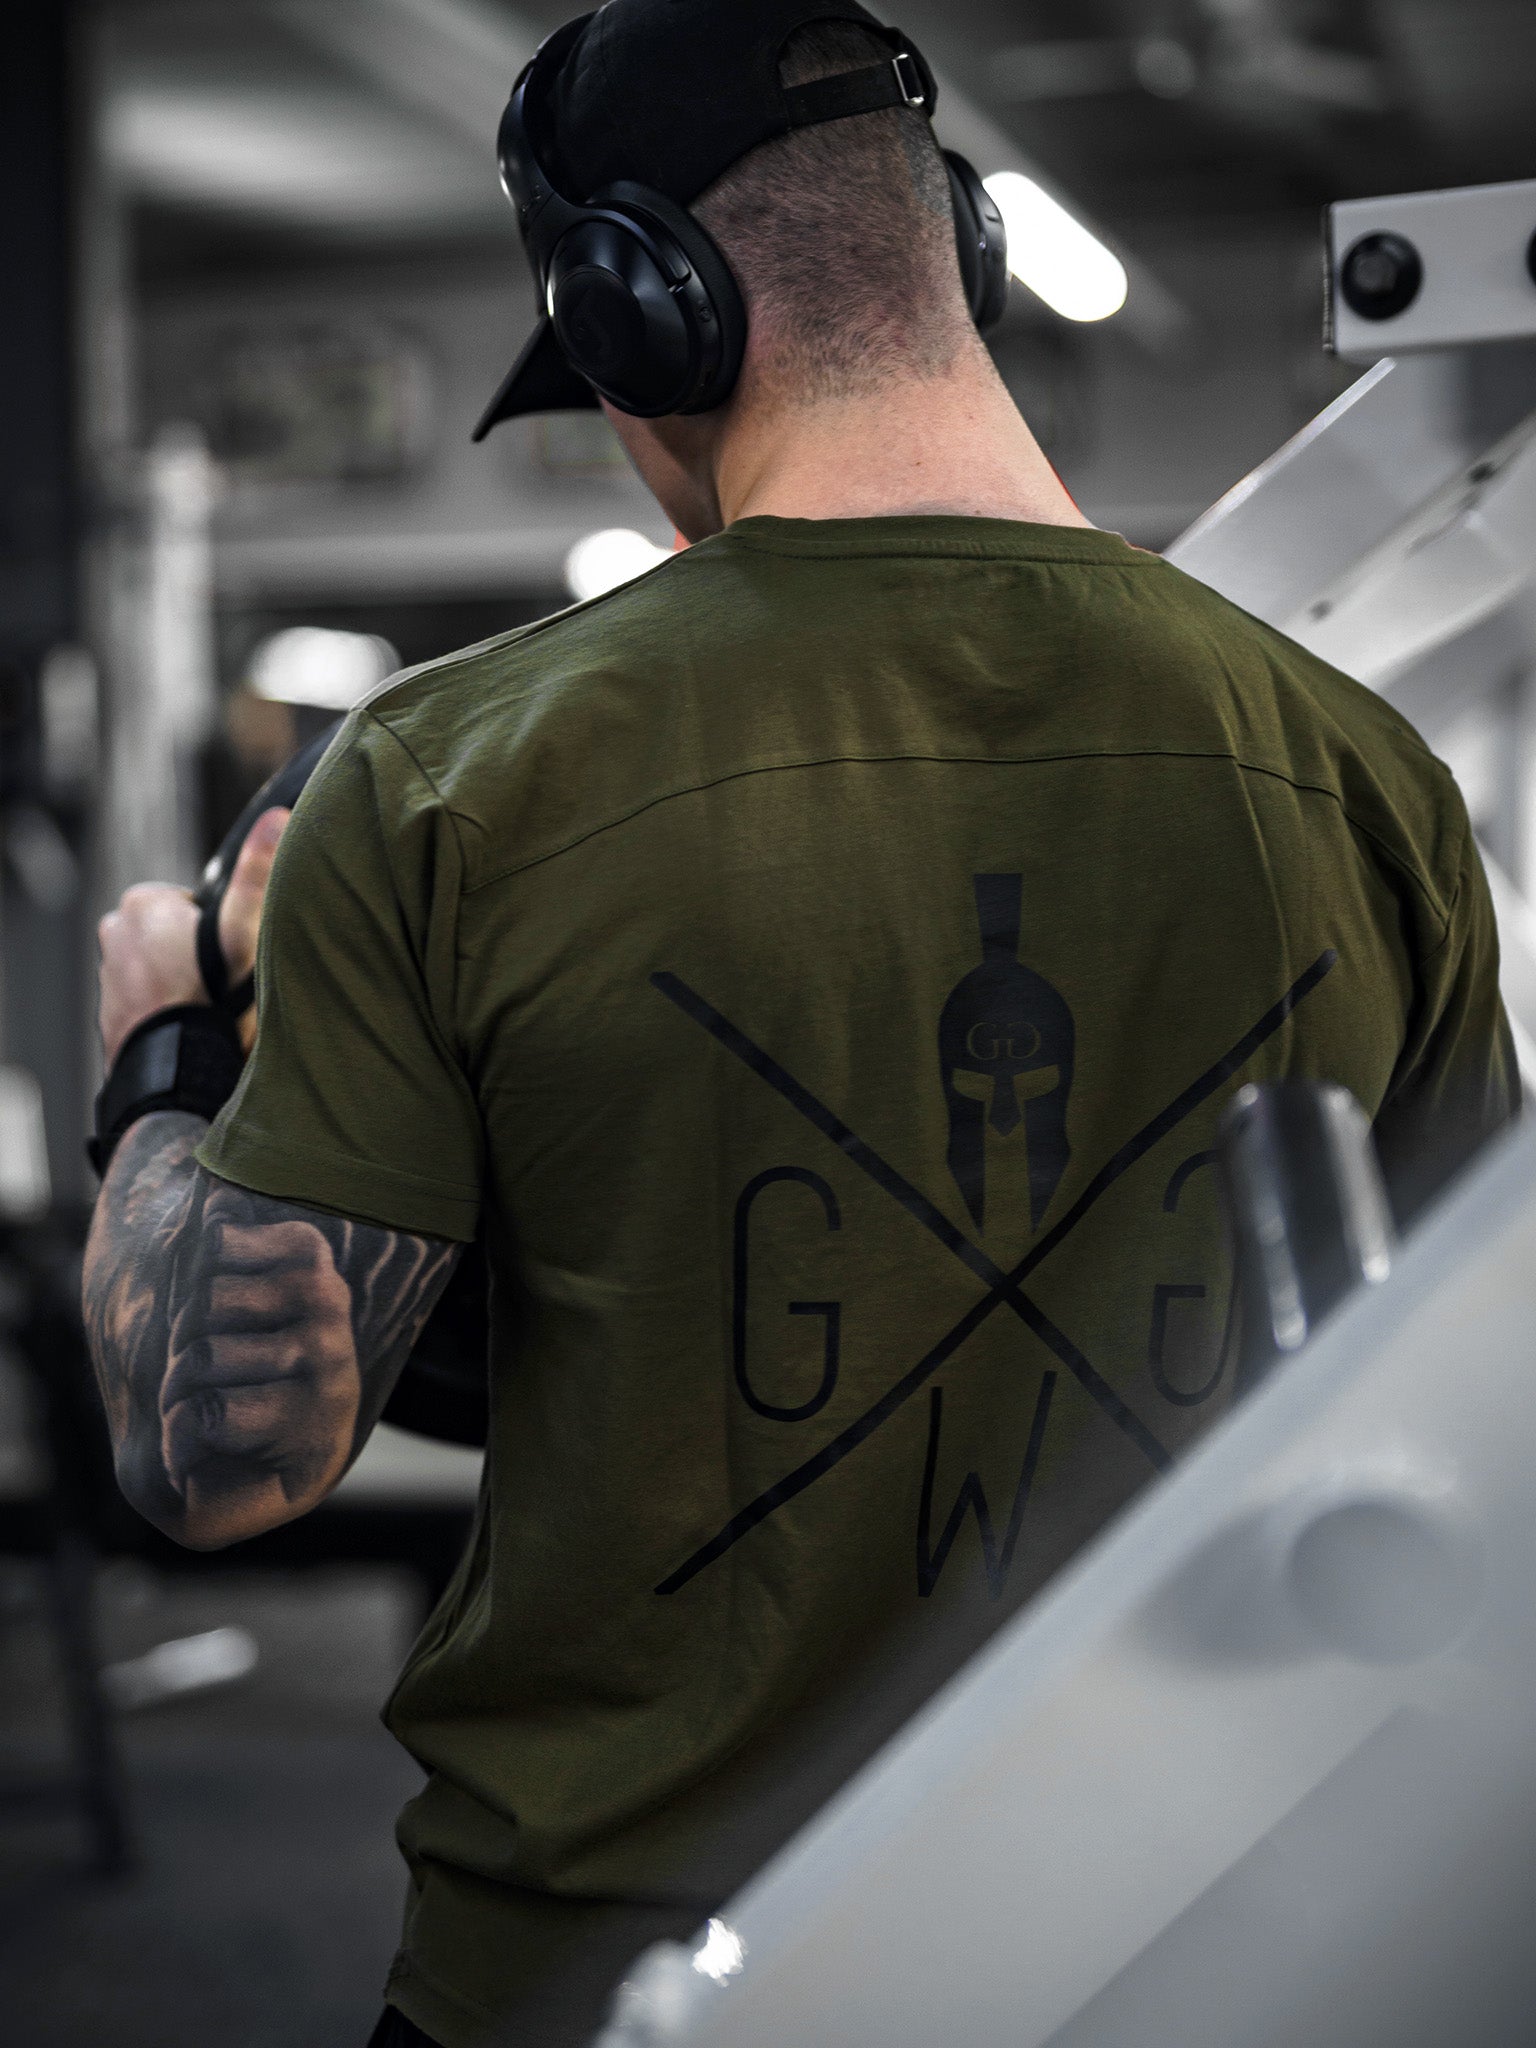 Sportliches olivgrünes Gym T-Shirt Warrior von Gym Generation, zeigt deine Leidenschaft für Training und Stil.